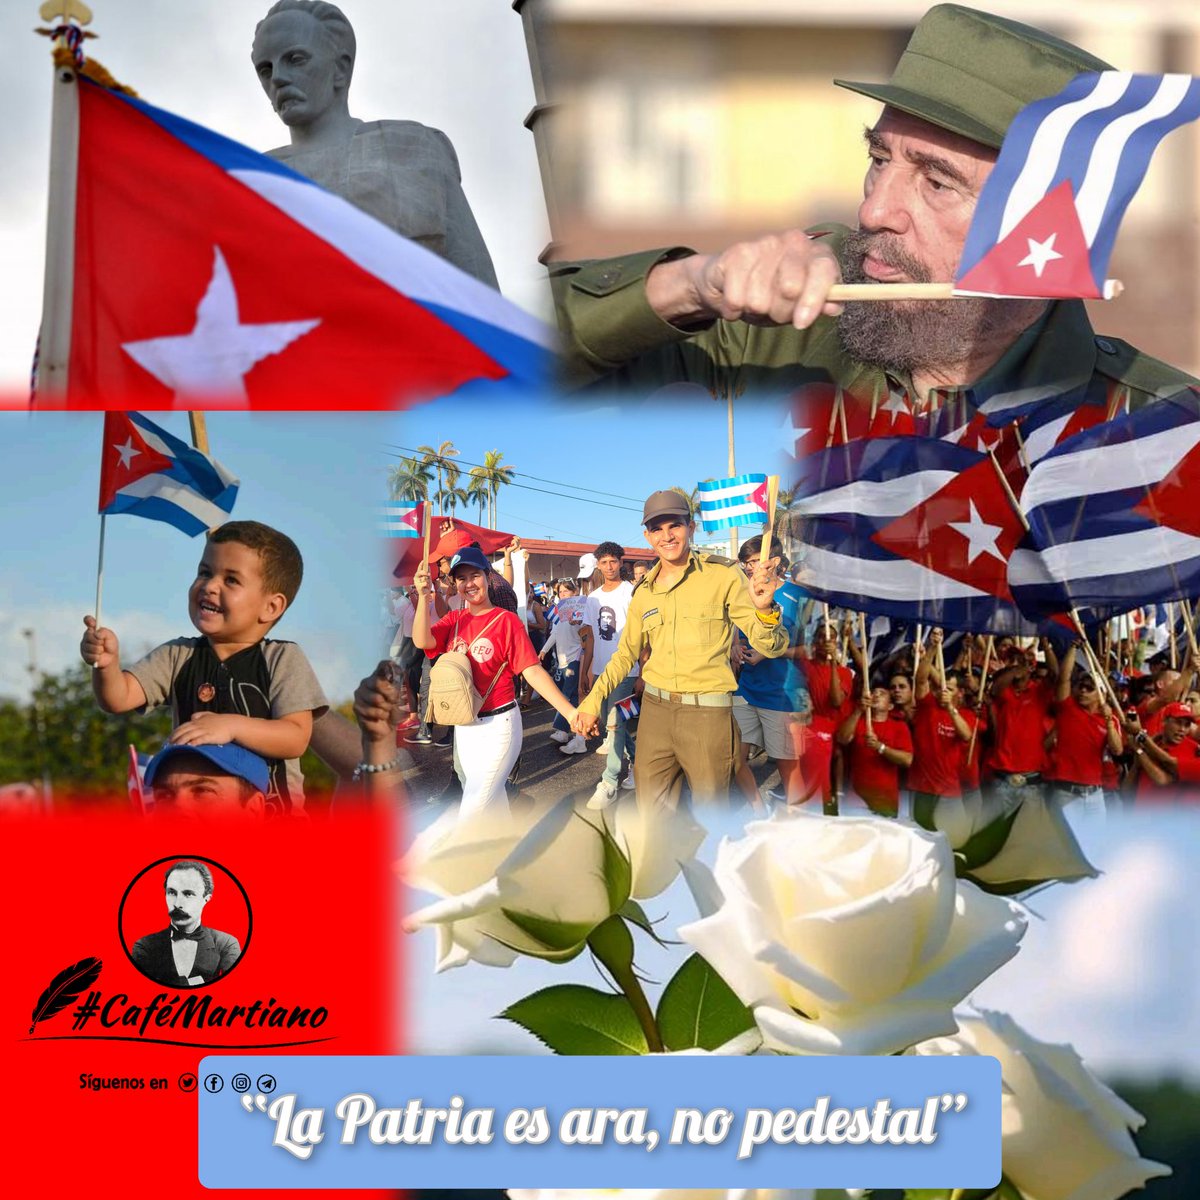 En revolución, los métodos han de ser callados; y los fines, públicos. José Martí 
#MartíVive 
#SentirPinero 
#IslaDeLaJuventud 
#PorUn26EnEl24 
#SaludPineraXUn26en24